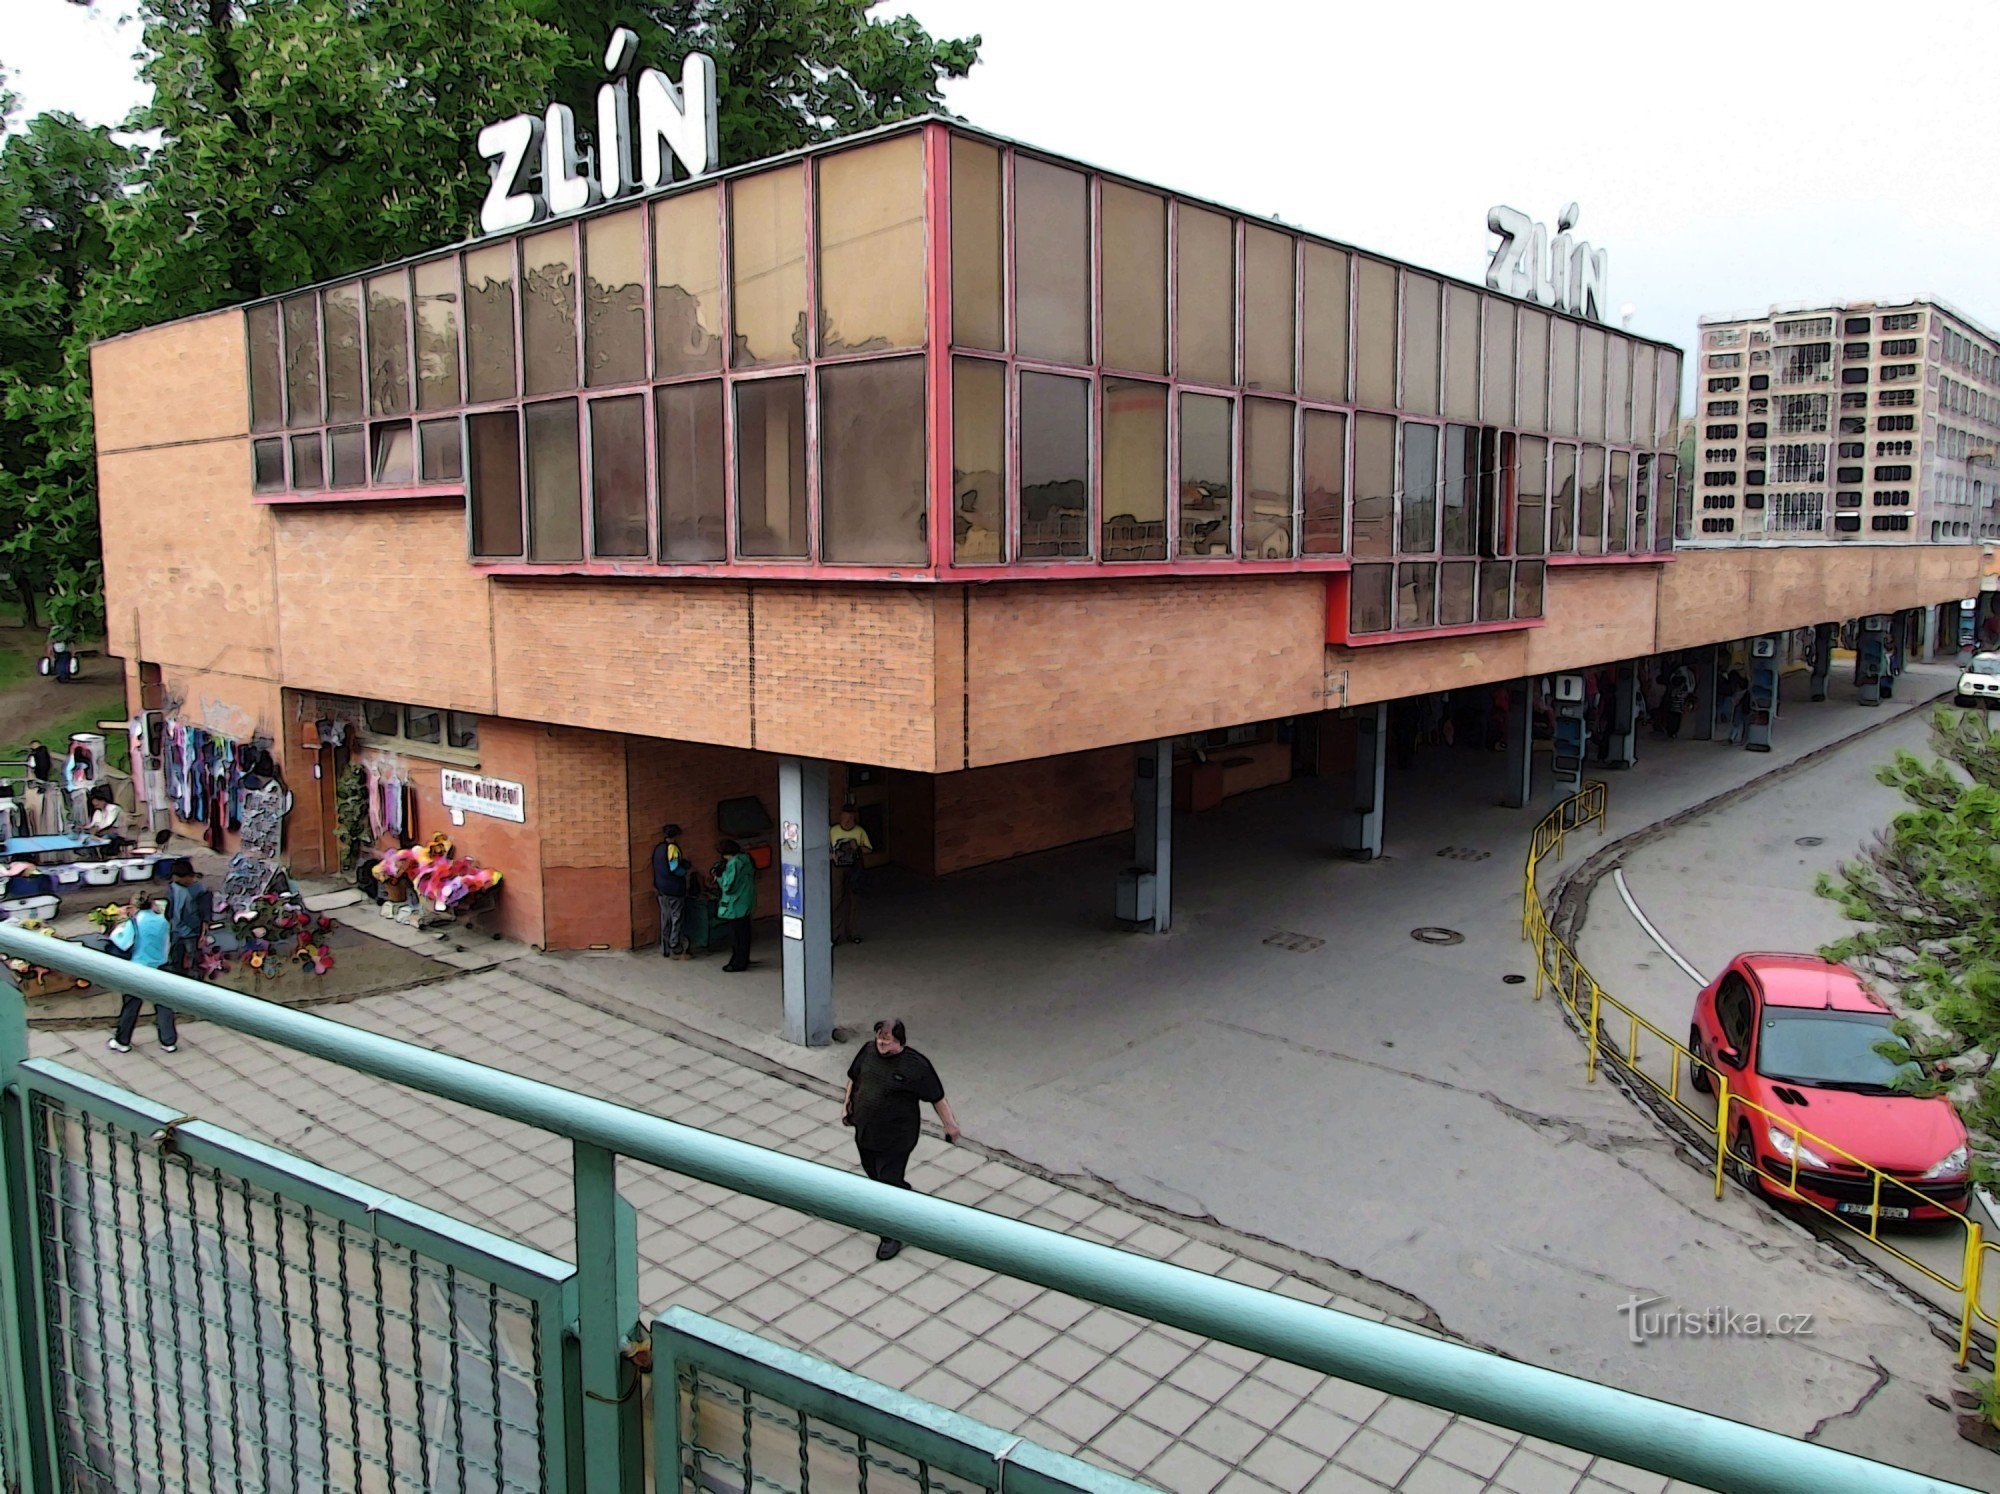 Σταθμός λεωφορείων Zlín